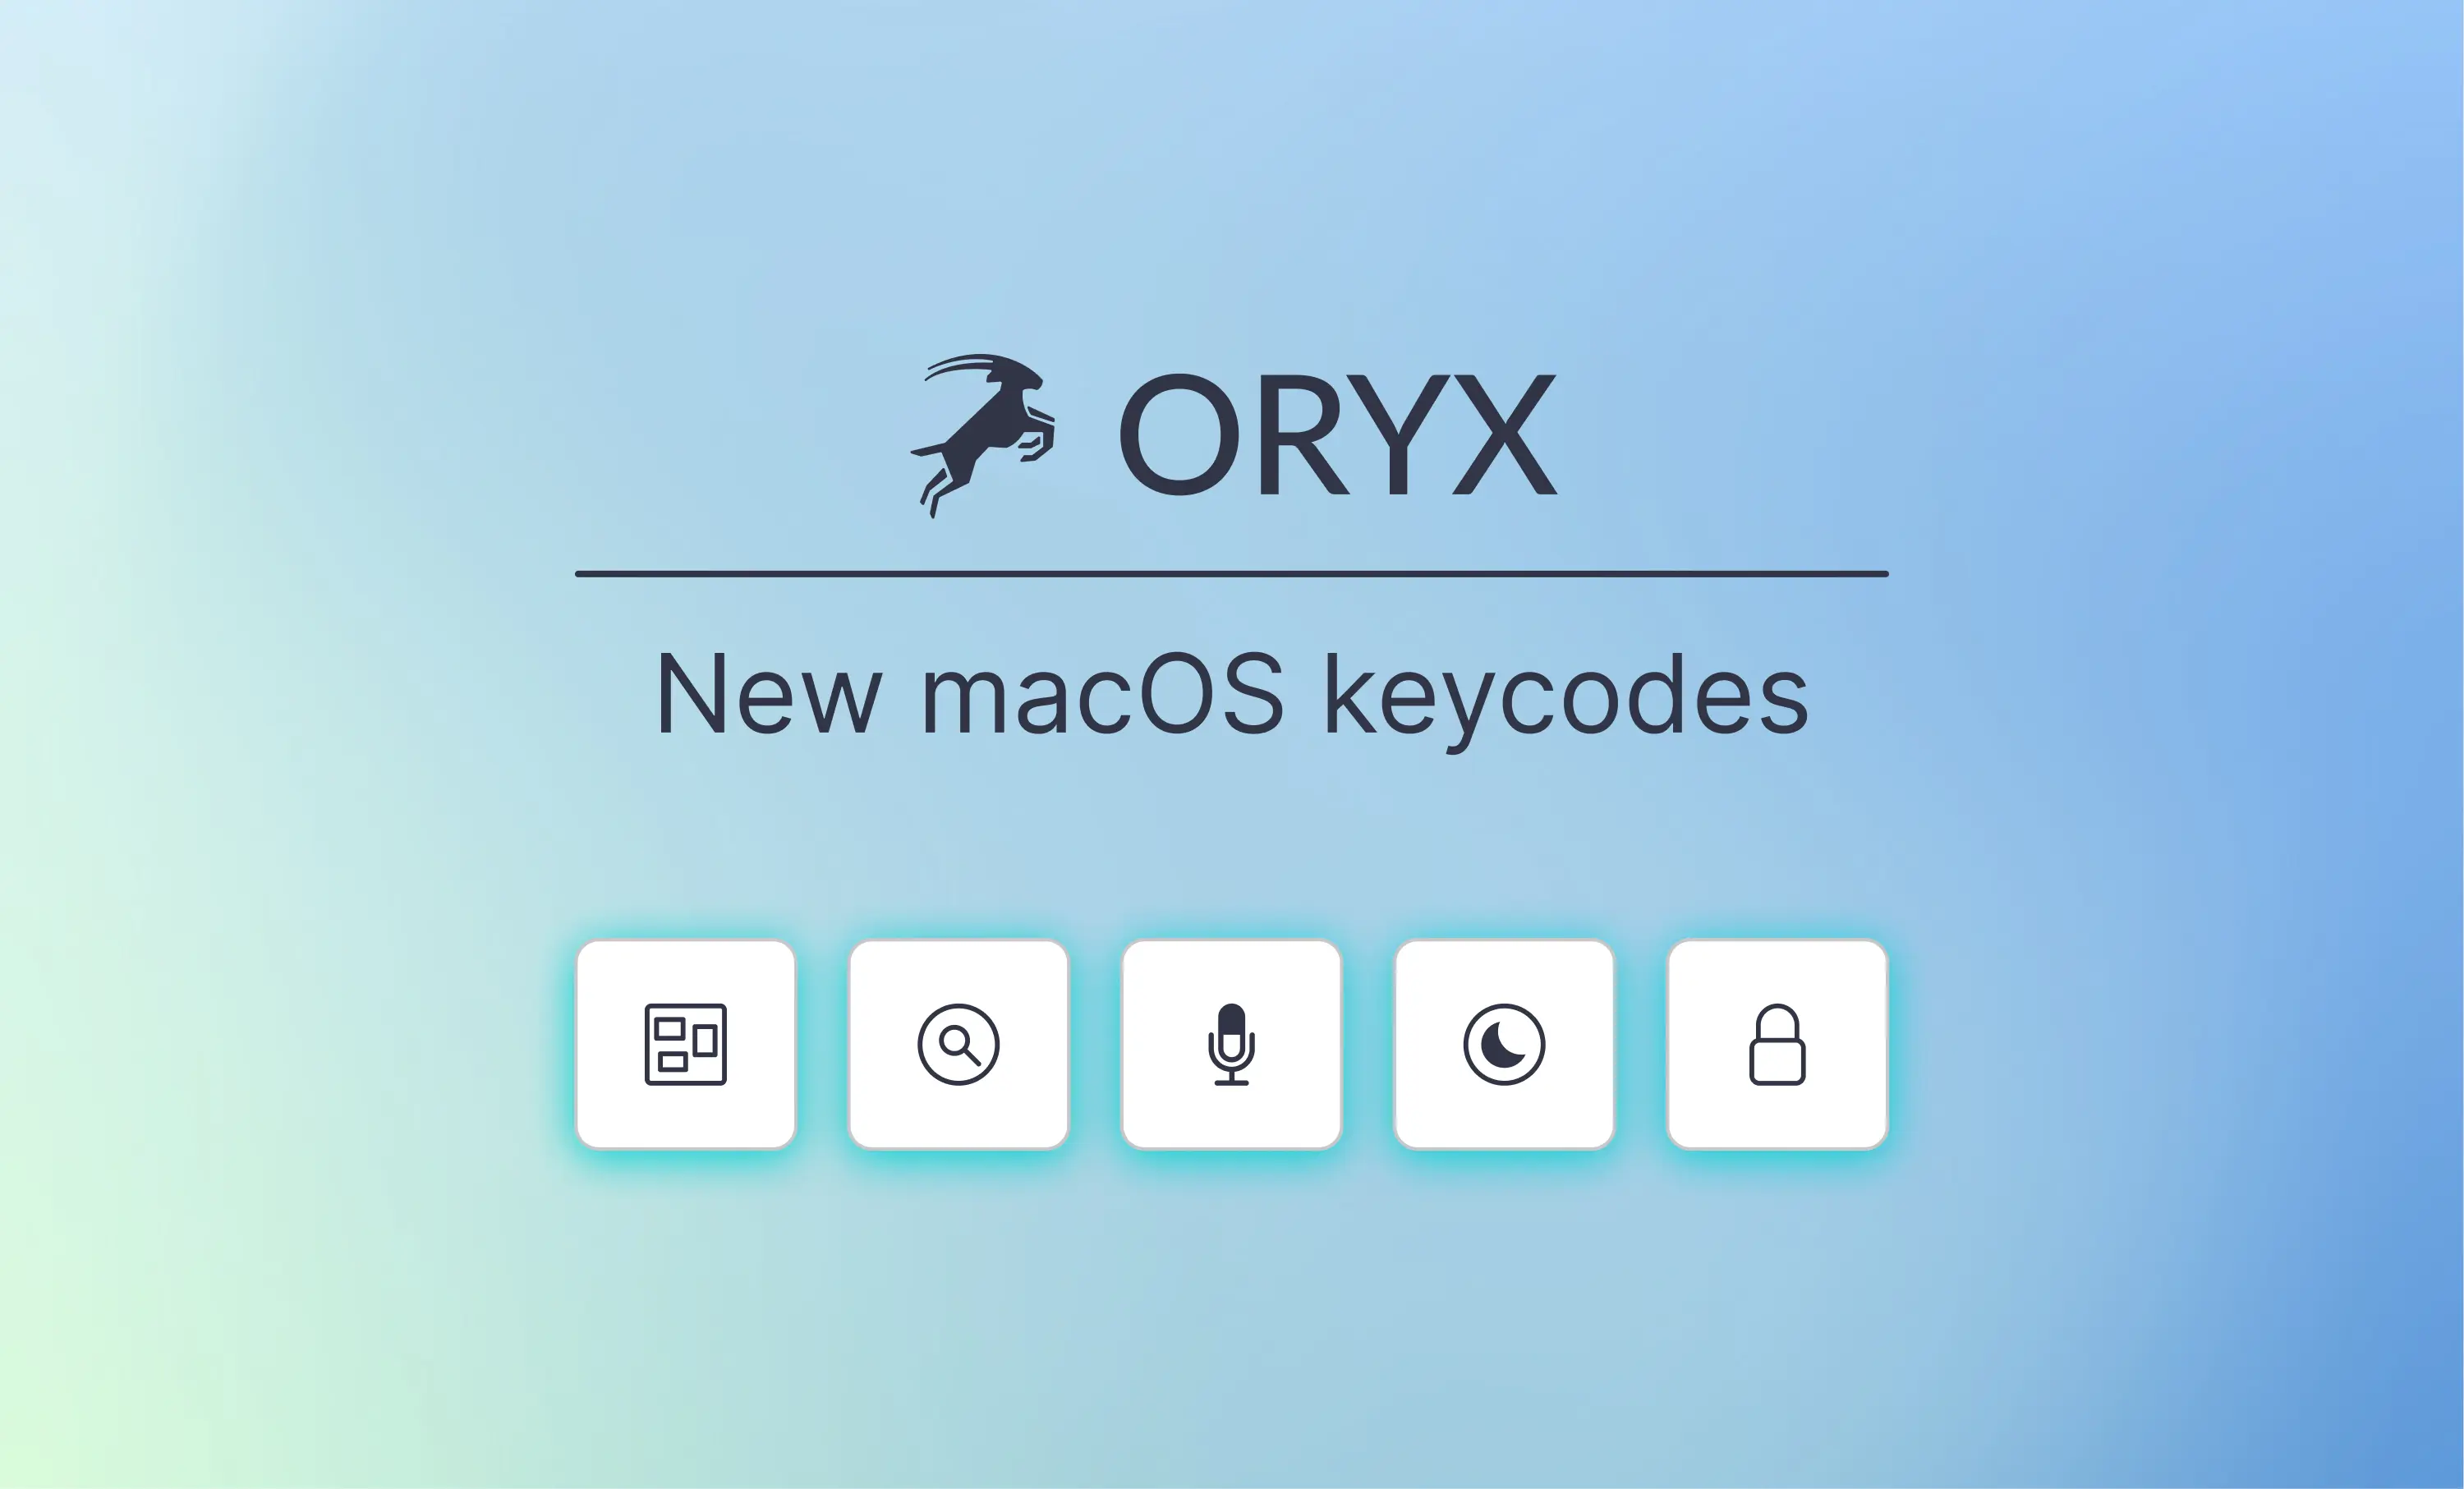 Introducing New macOS Keycodes